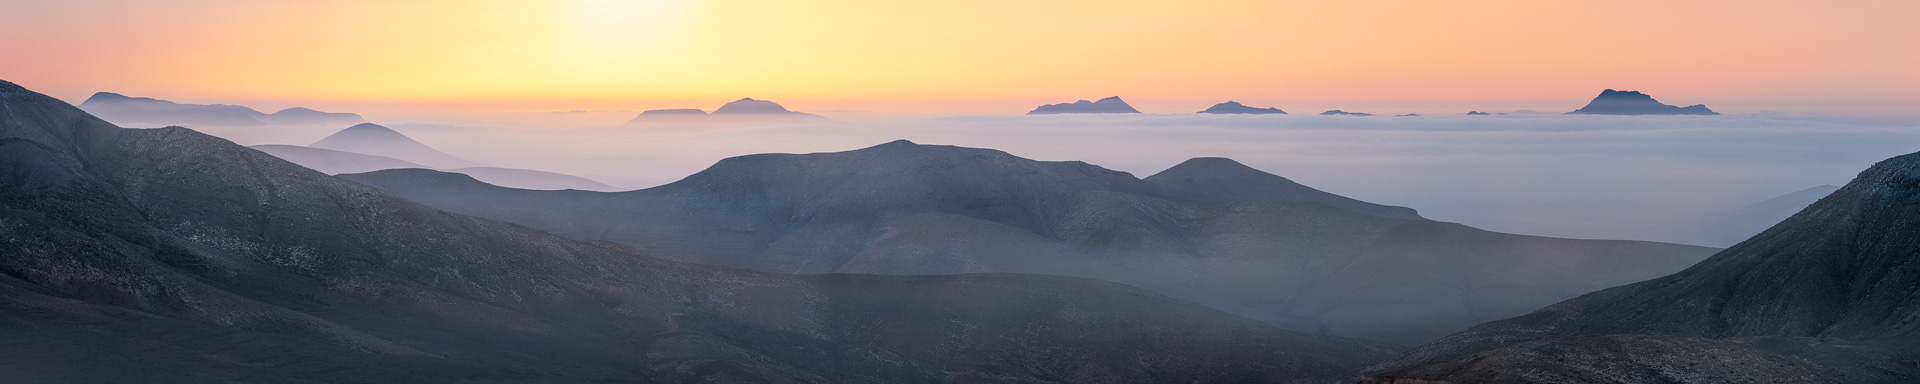 Die Berge von Fuerteventura sind zu Sonnenaufgang von Nebel umgeben.